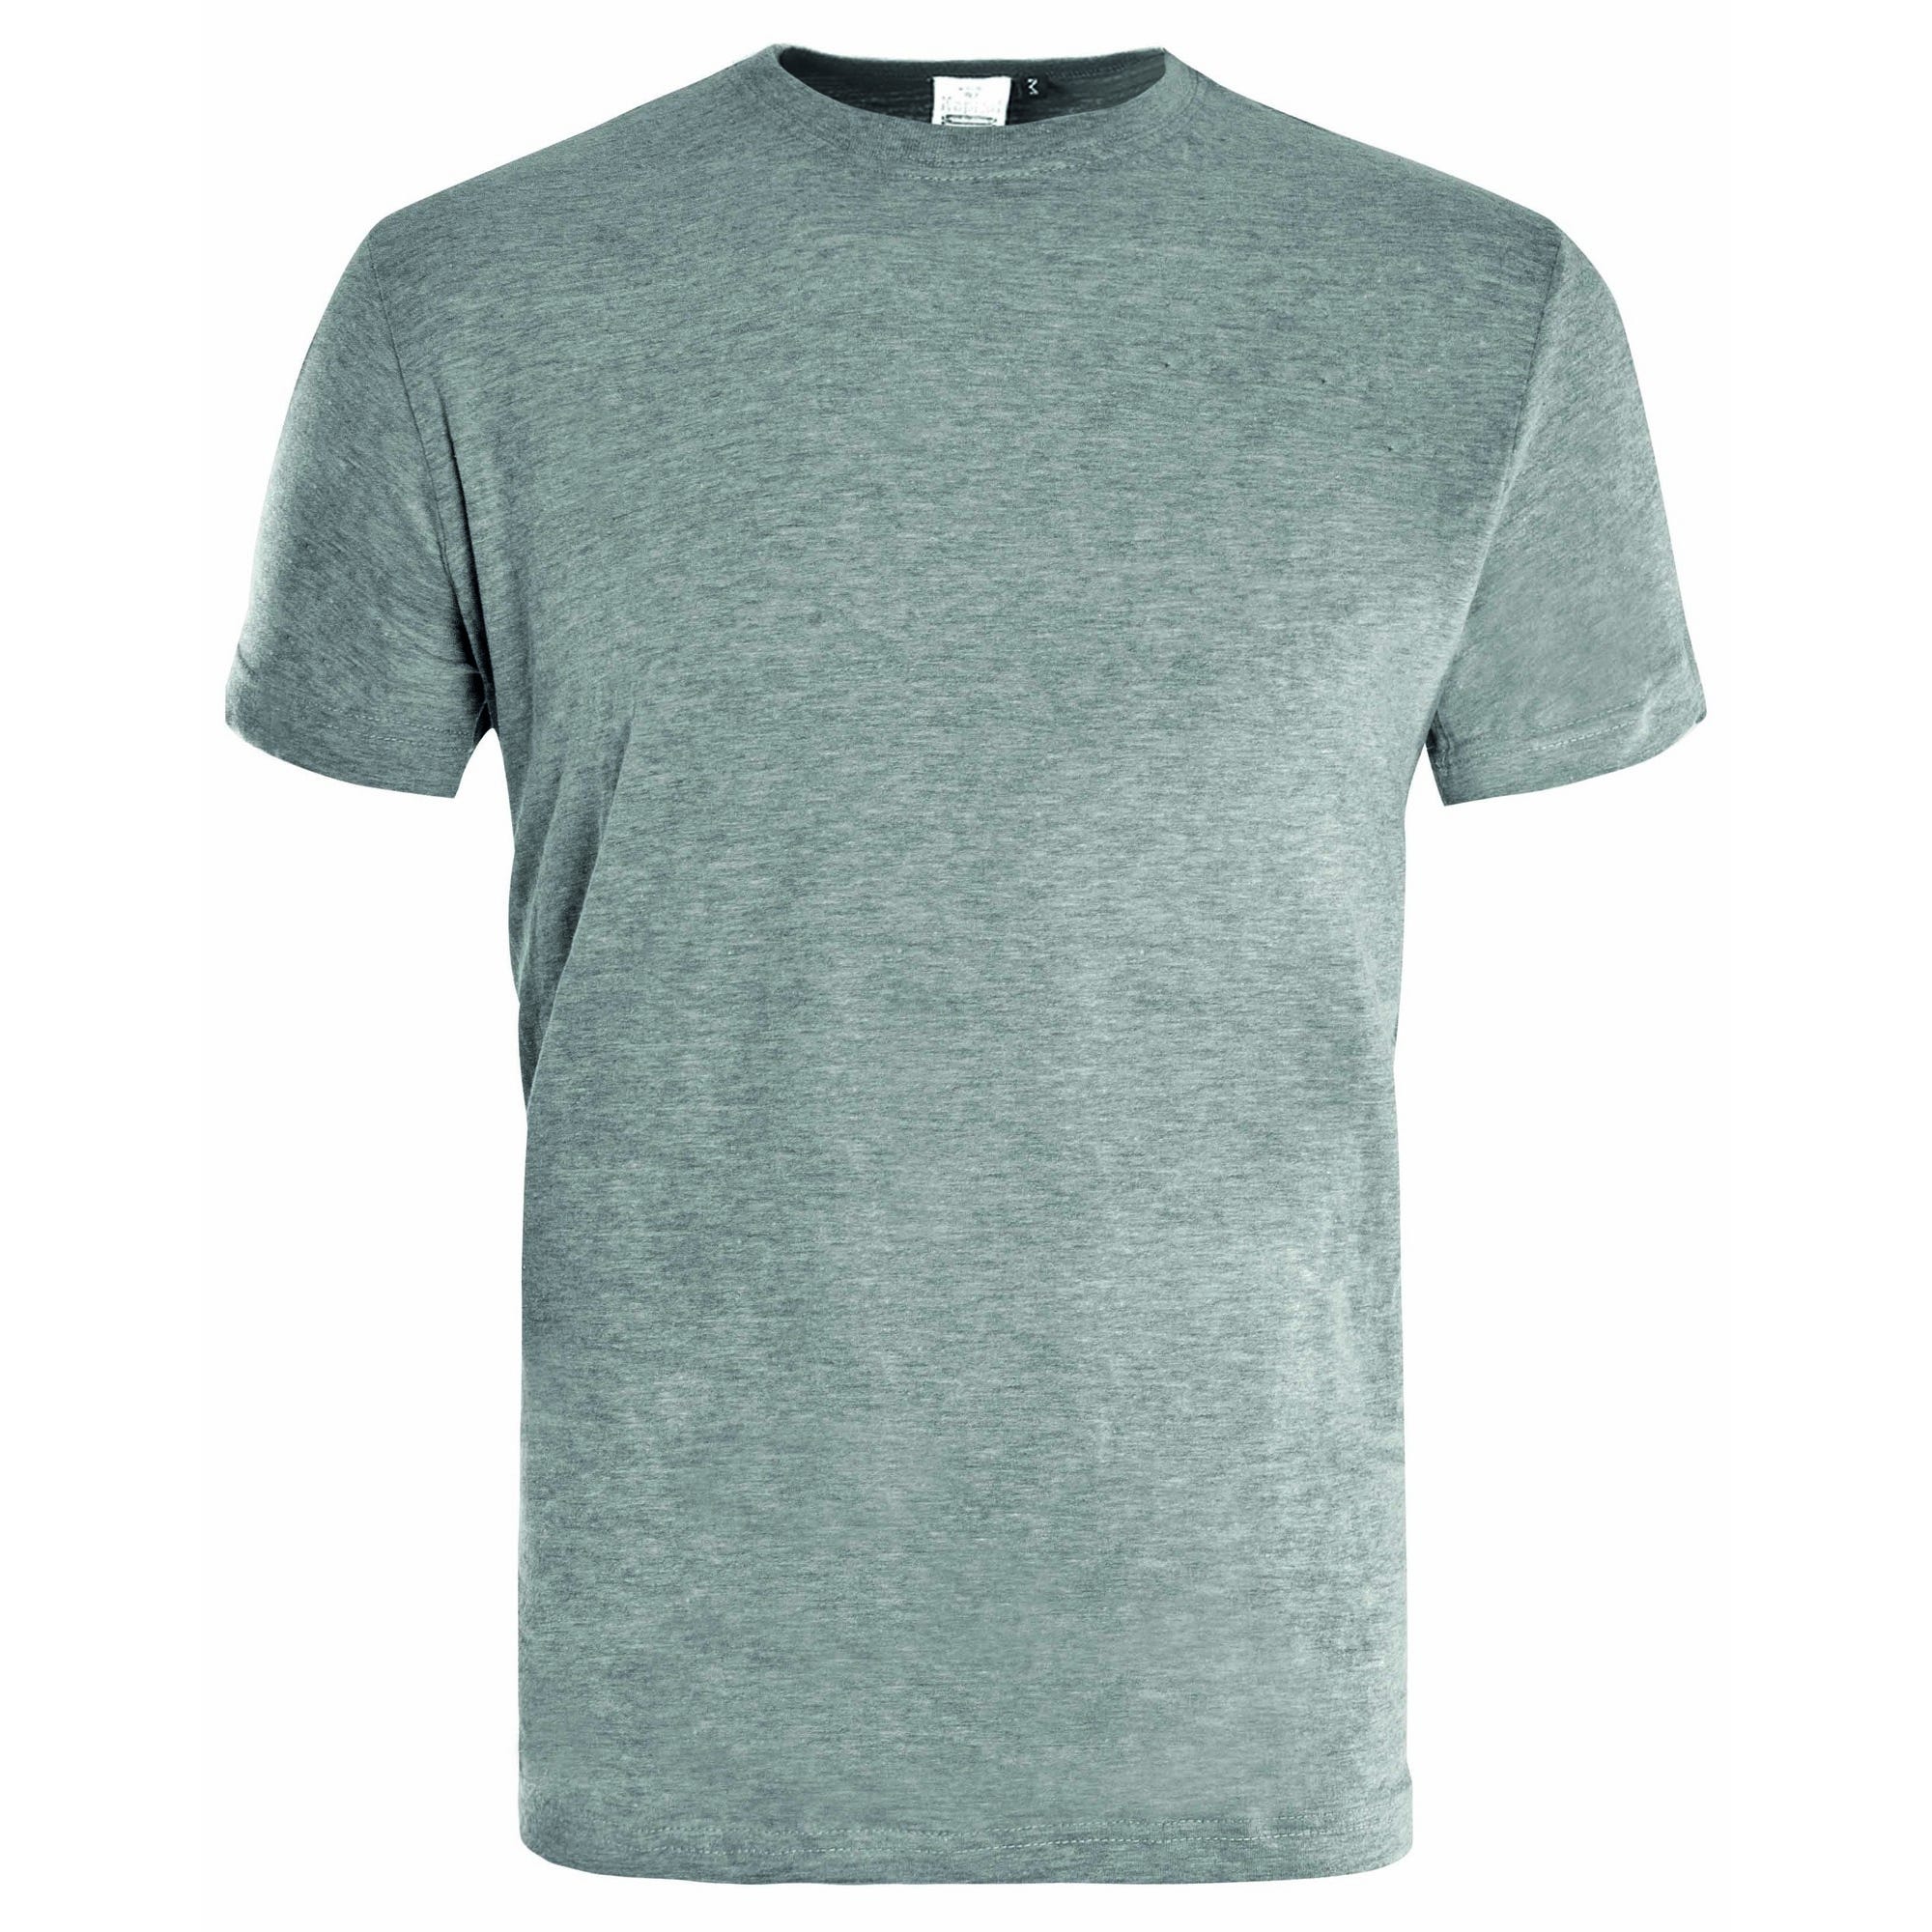 T-shirt de travail gris clair T.L - KAPRIOL 0